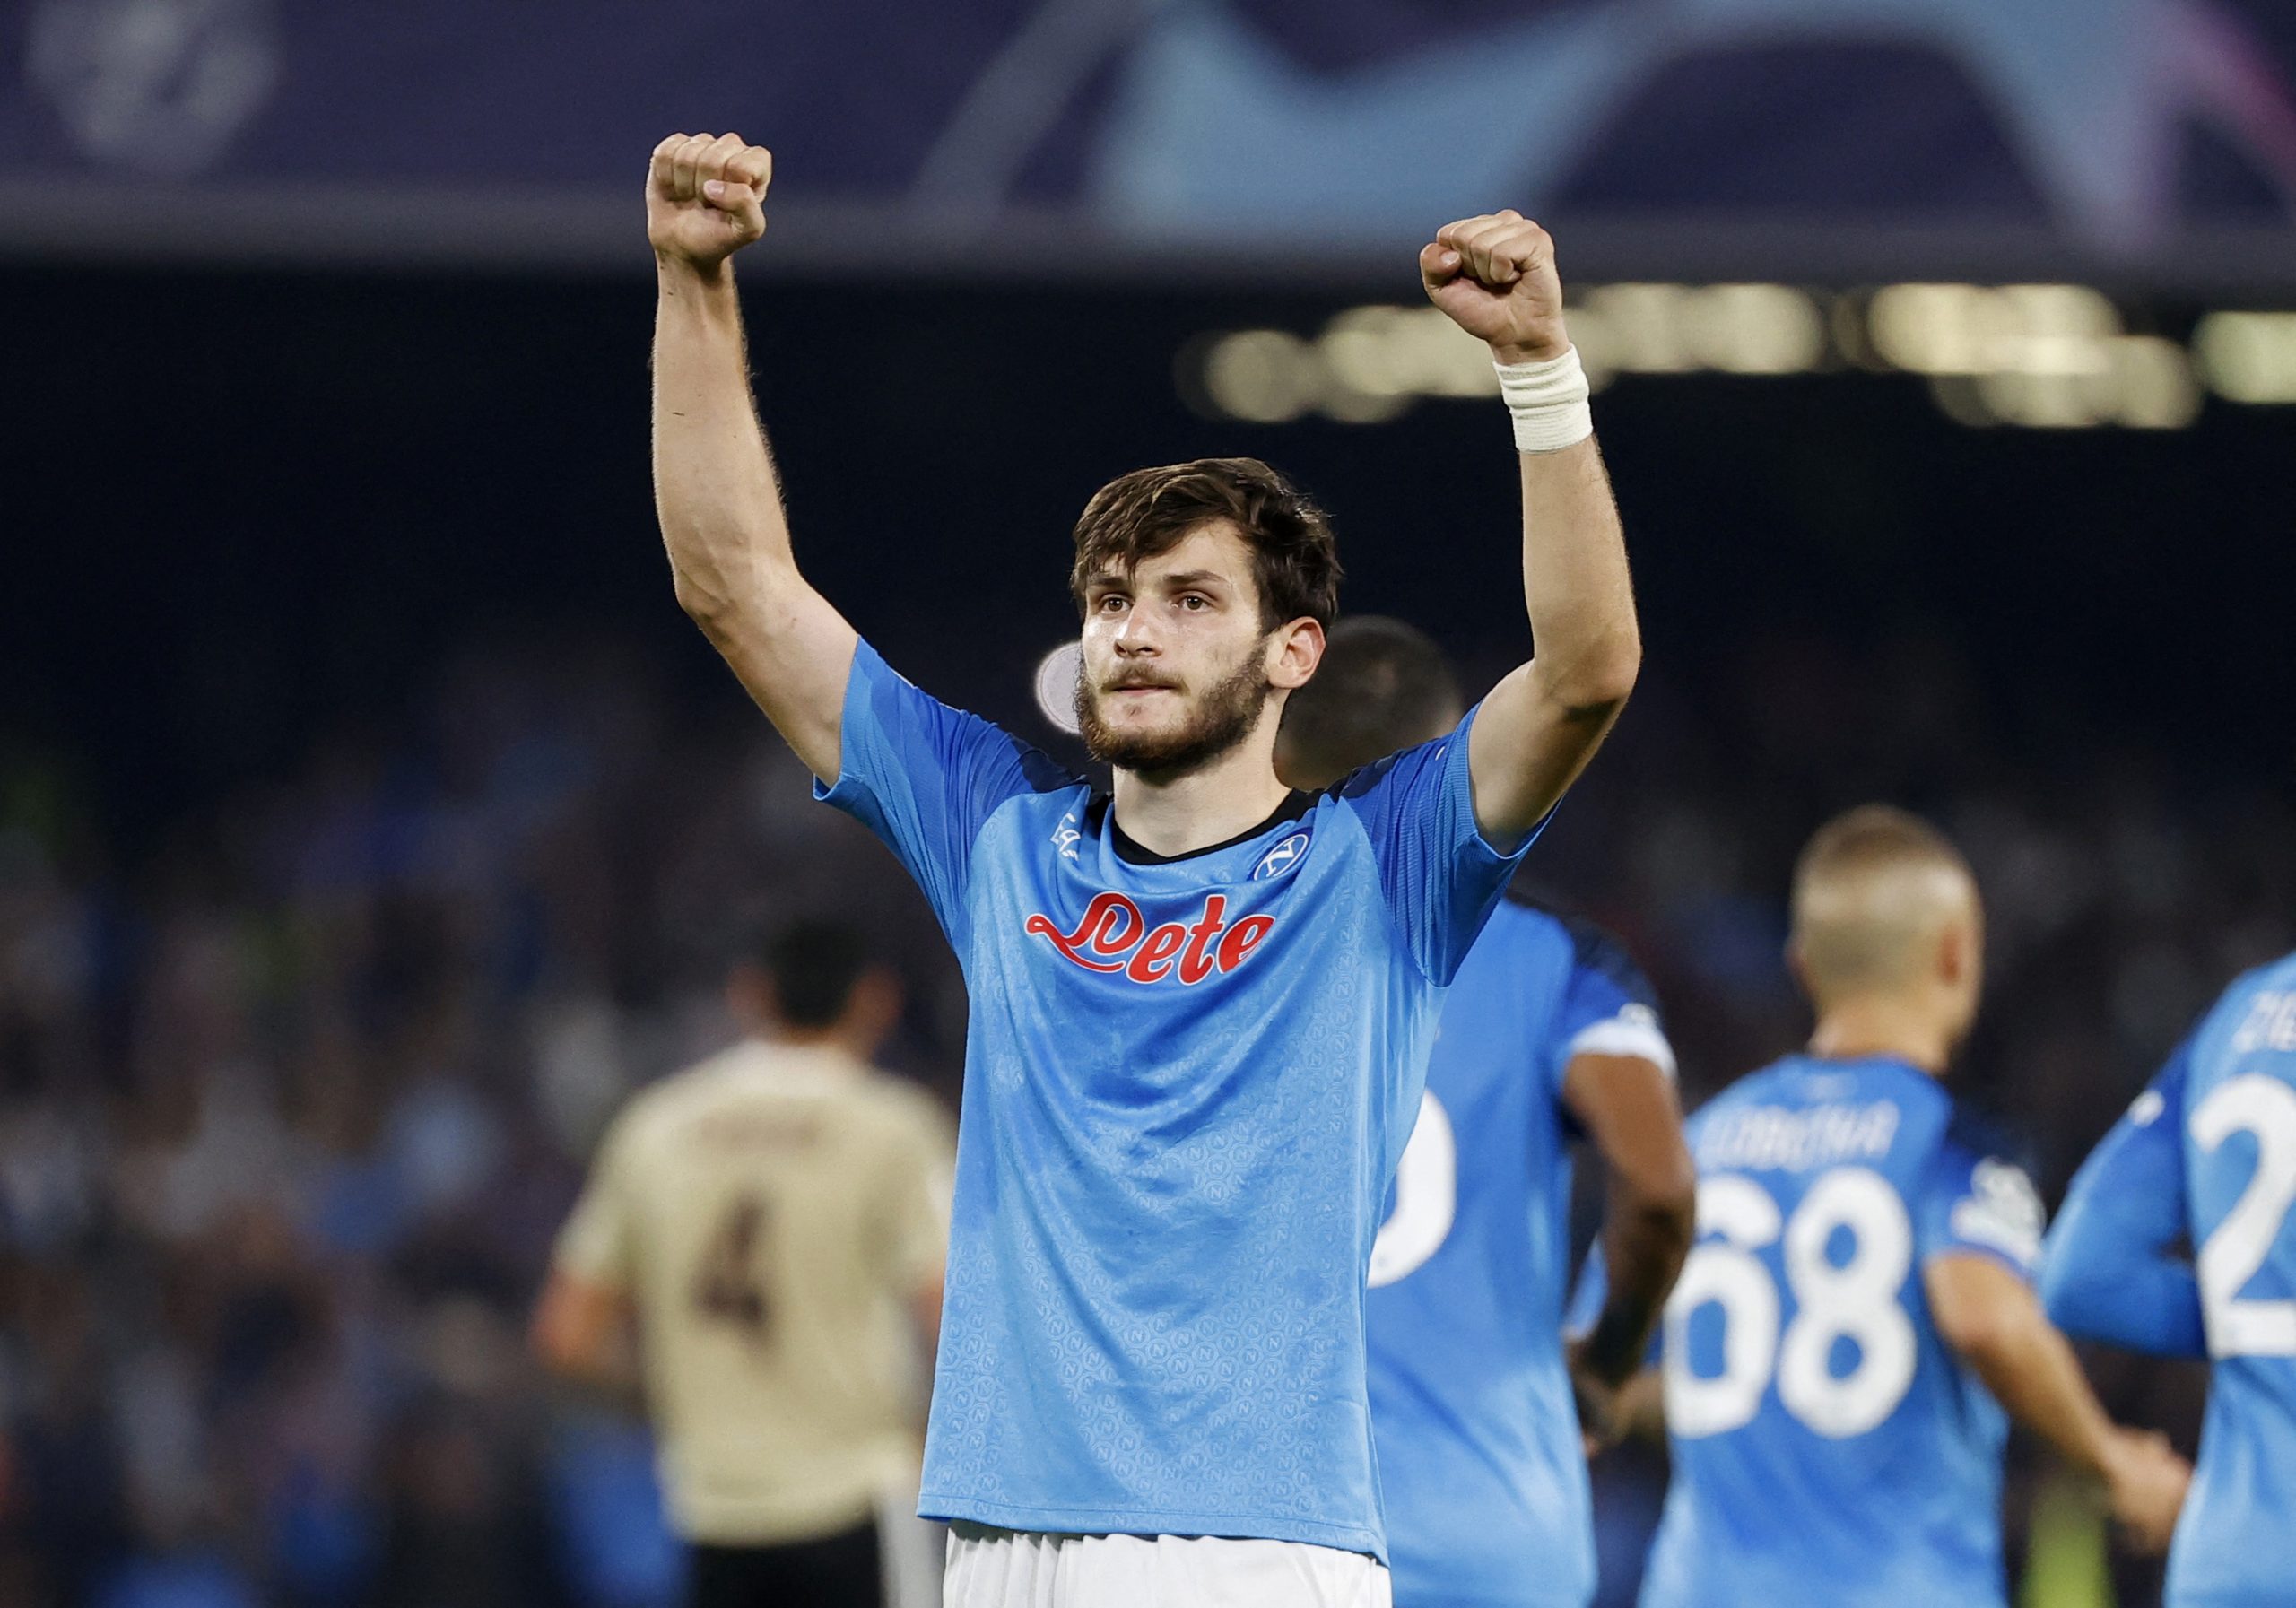 Napoli's Khvicha Kvaratskhelia celebrates scoring their third goal